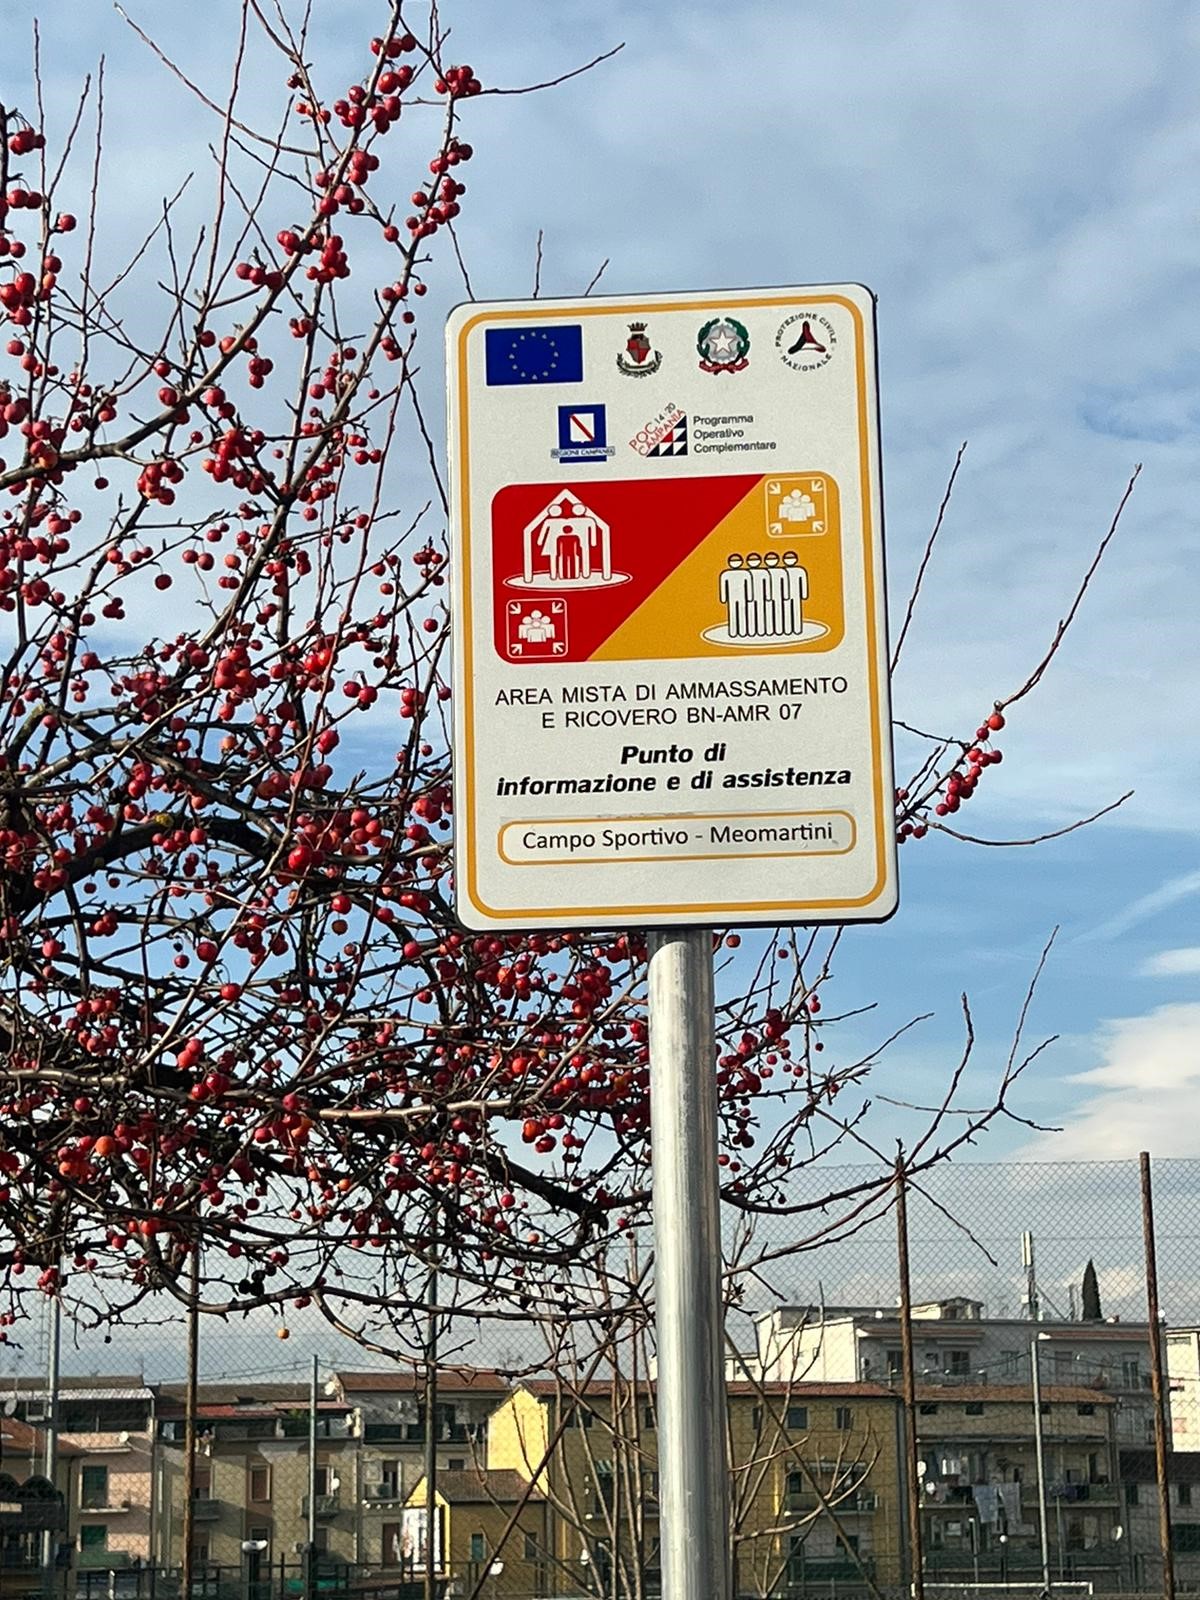 Piano di Protezione civile, a Benevento posizionata la cartellonistica dei luoghi di ricovero